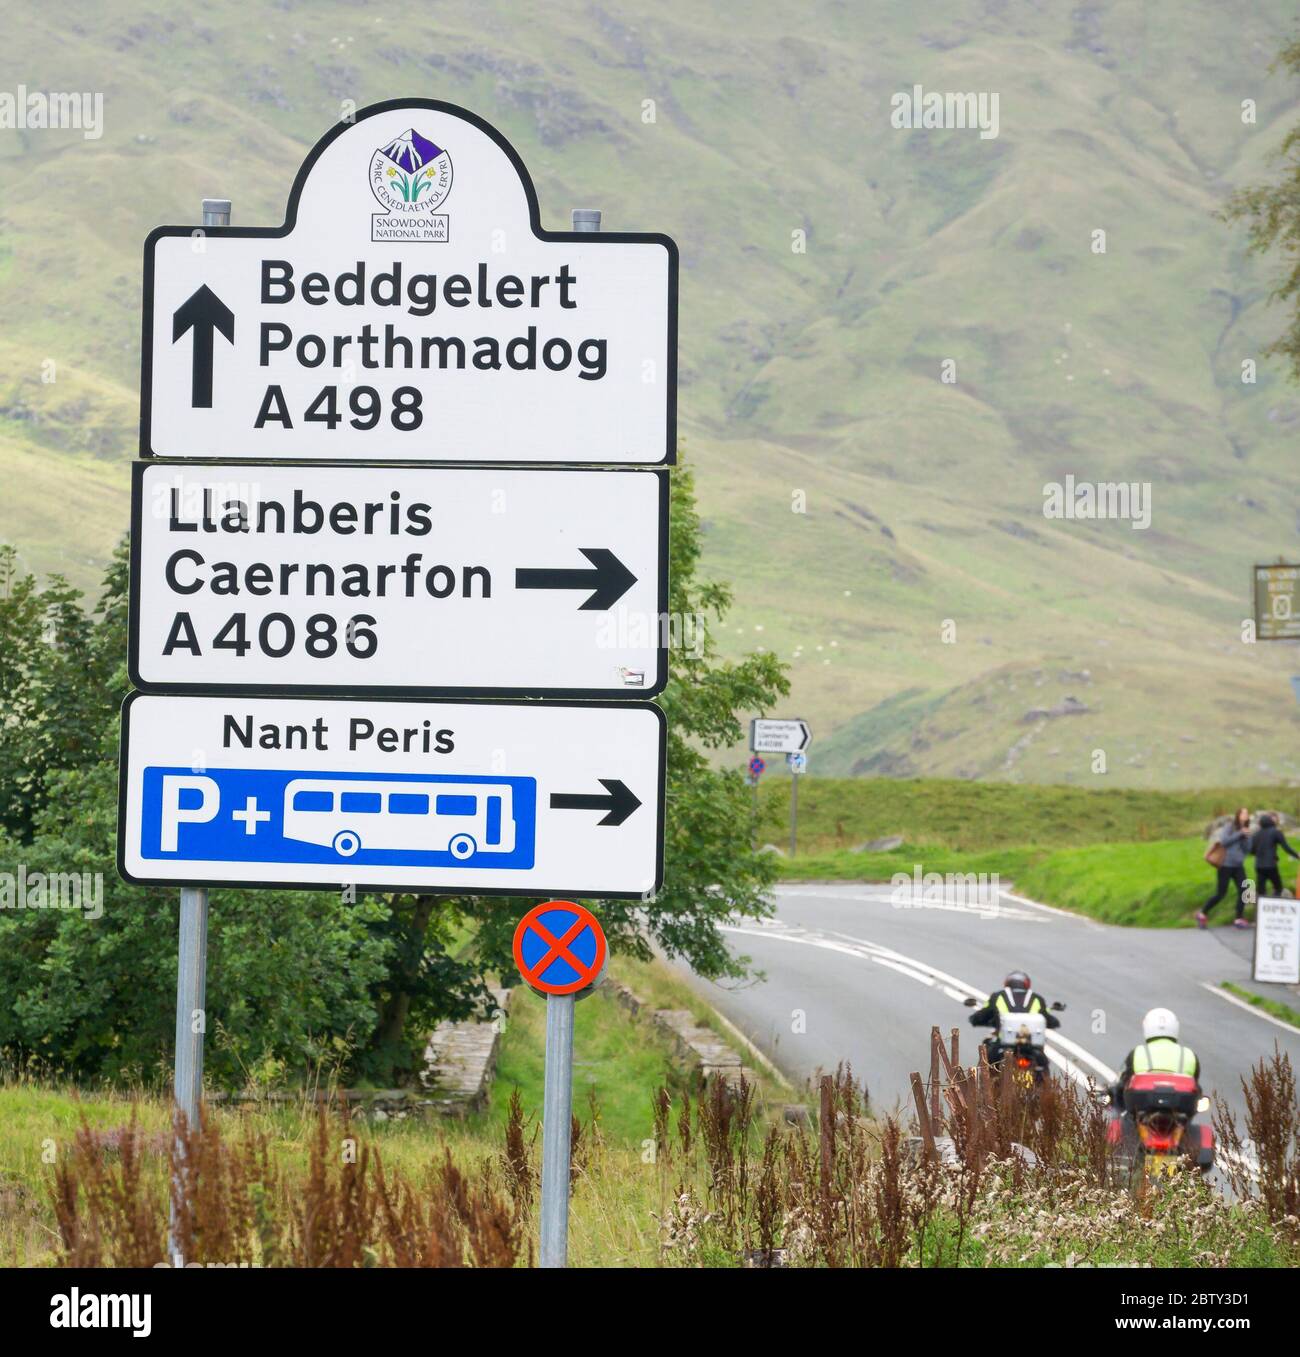 Reisen im Snowdonia National Park, North Wales, Großbritannien. Ein wichtiges und wichtiges Straßenschild an einer gut befahrenen Kreuzung - Wegweiser für den beliebten Llanberis Pass (A4086), eine Route, die alle Interessierten an aktiven Outdoor-Aktivitäten in den walisischen Bergen bis zum Fuß des Mount Snowdon führt. Stockfoto